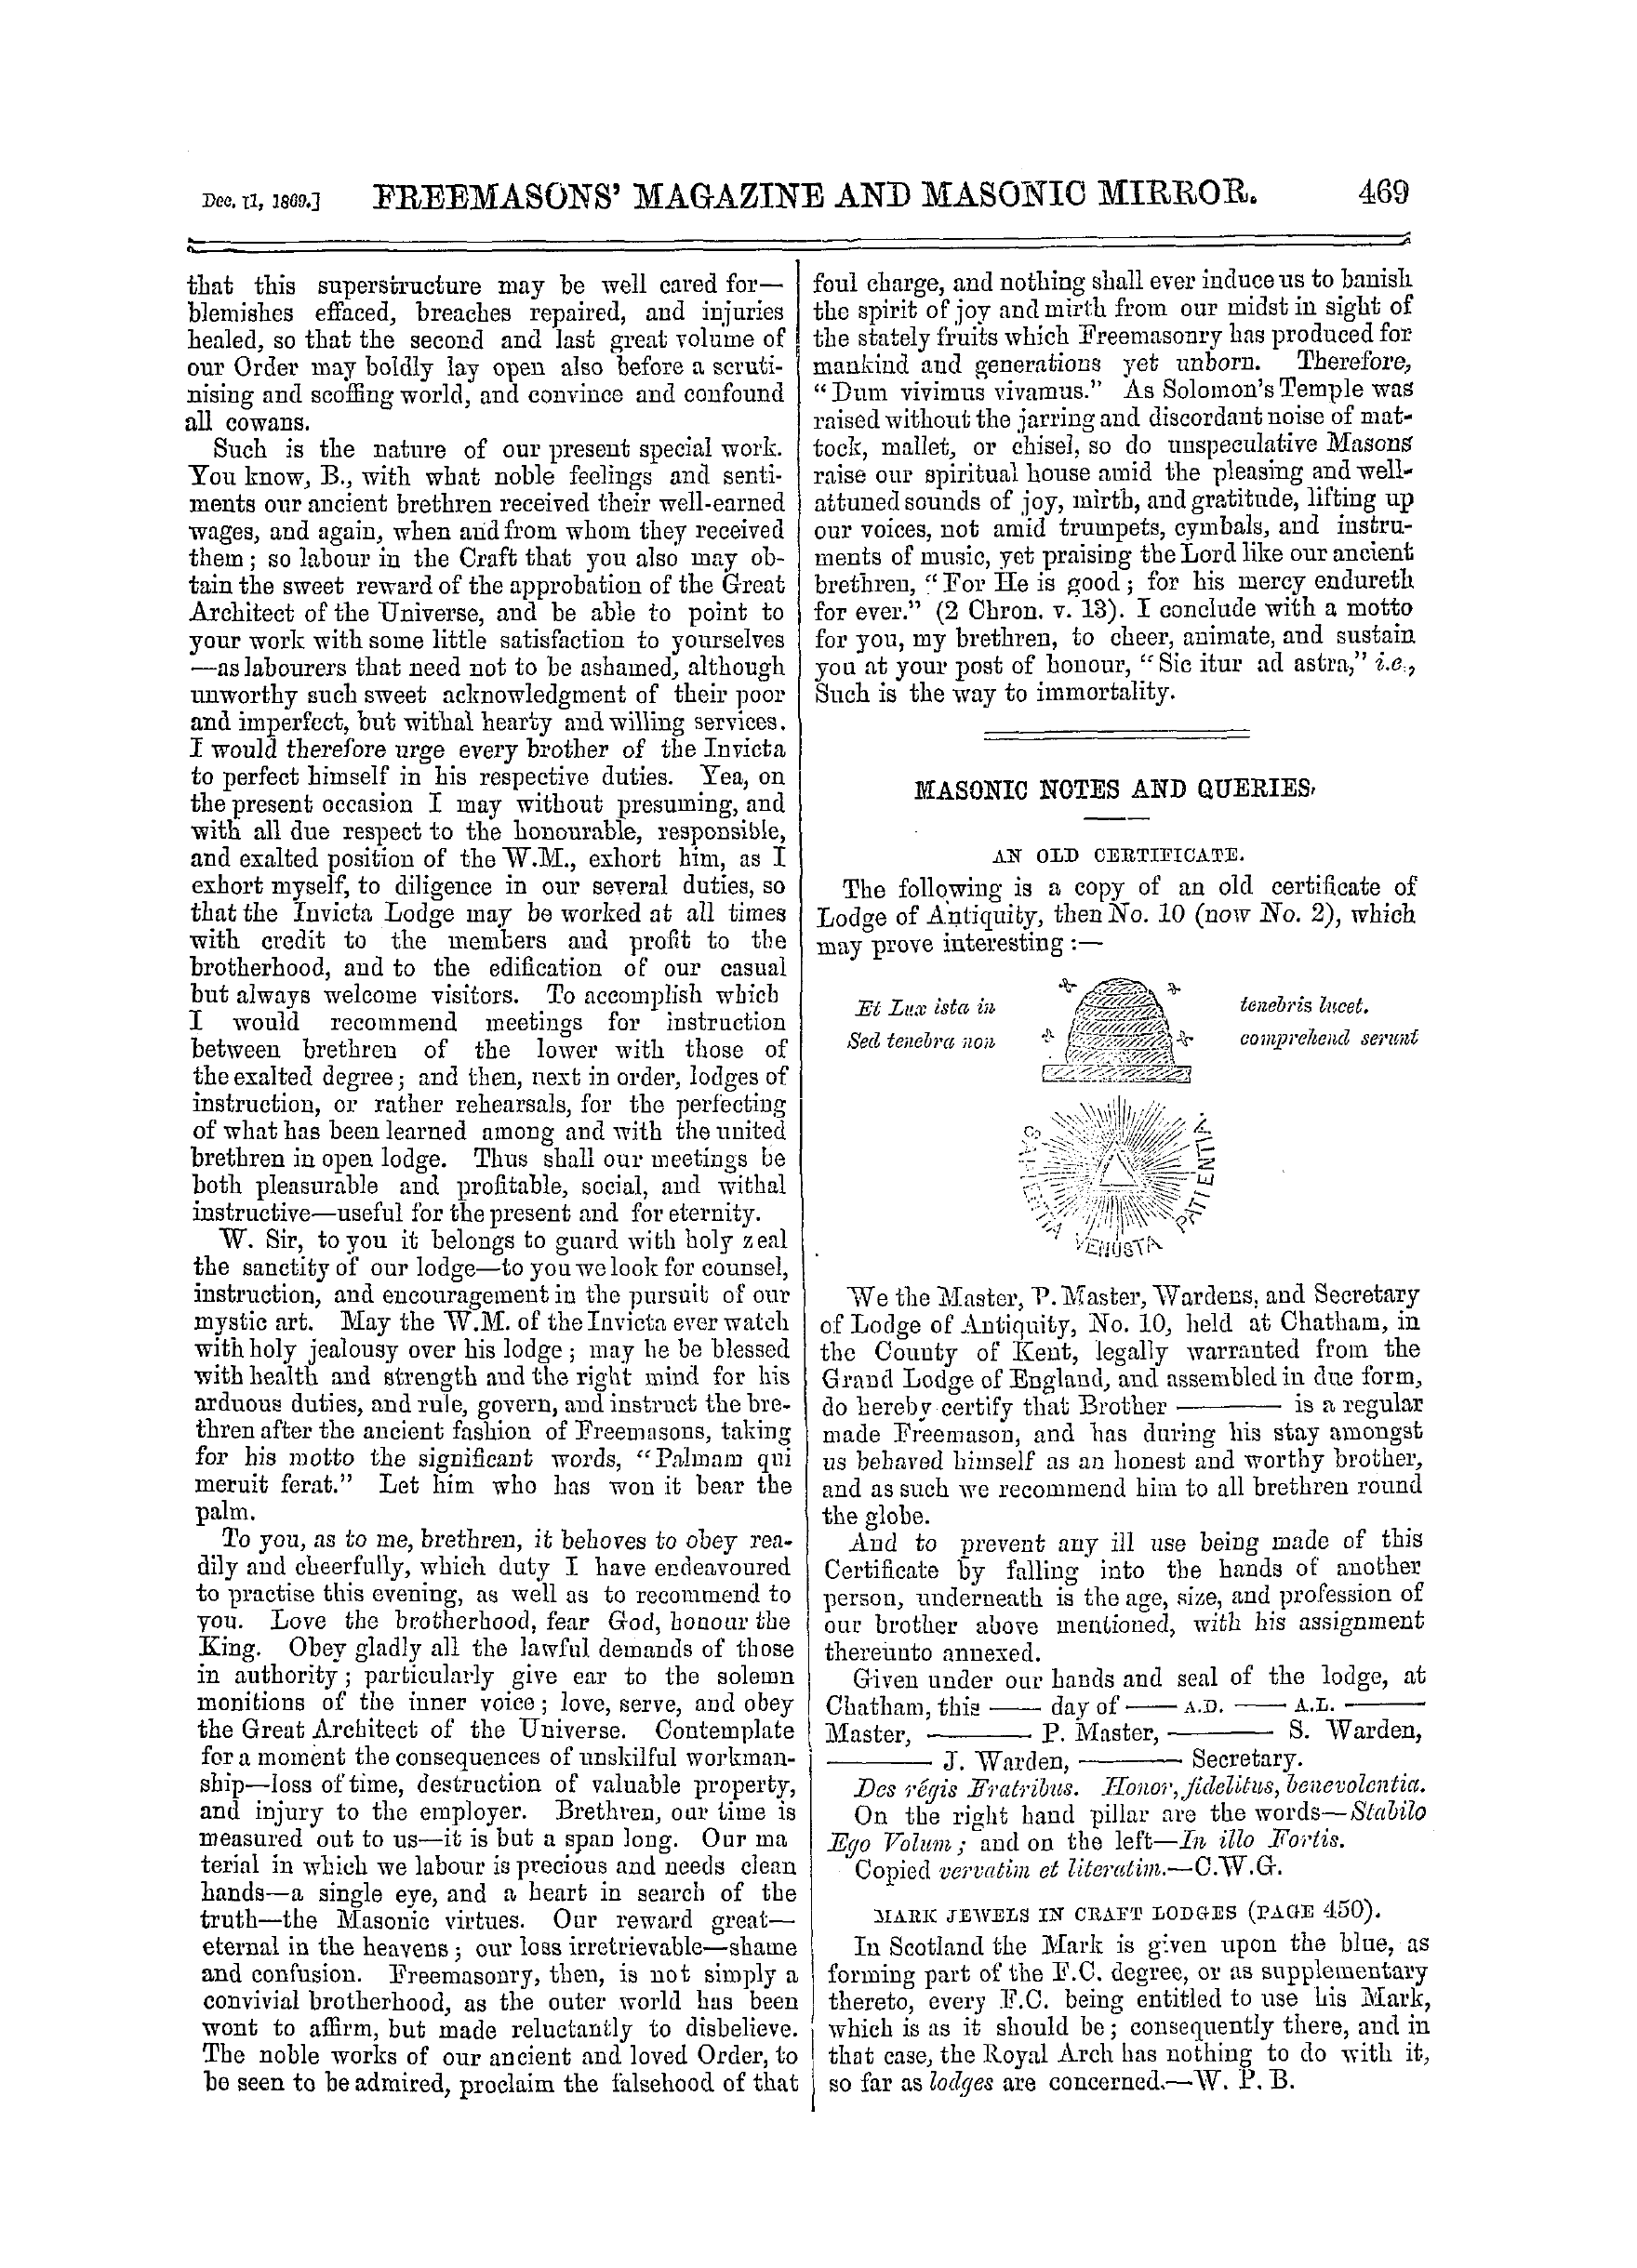 The Freemasons' Monthly Magazine: 1869-12-11 - Short Address